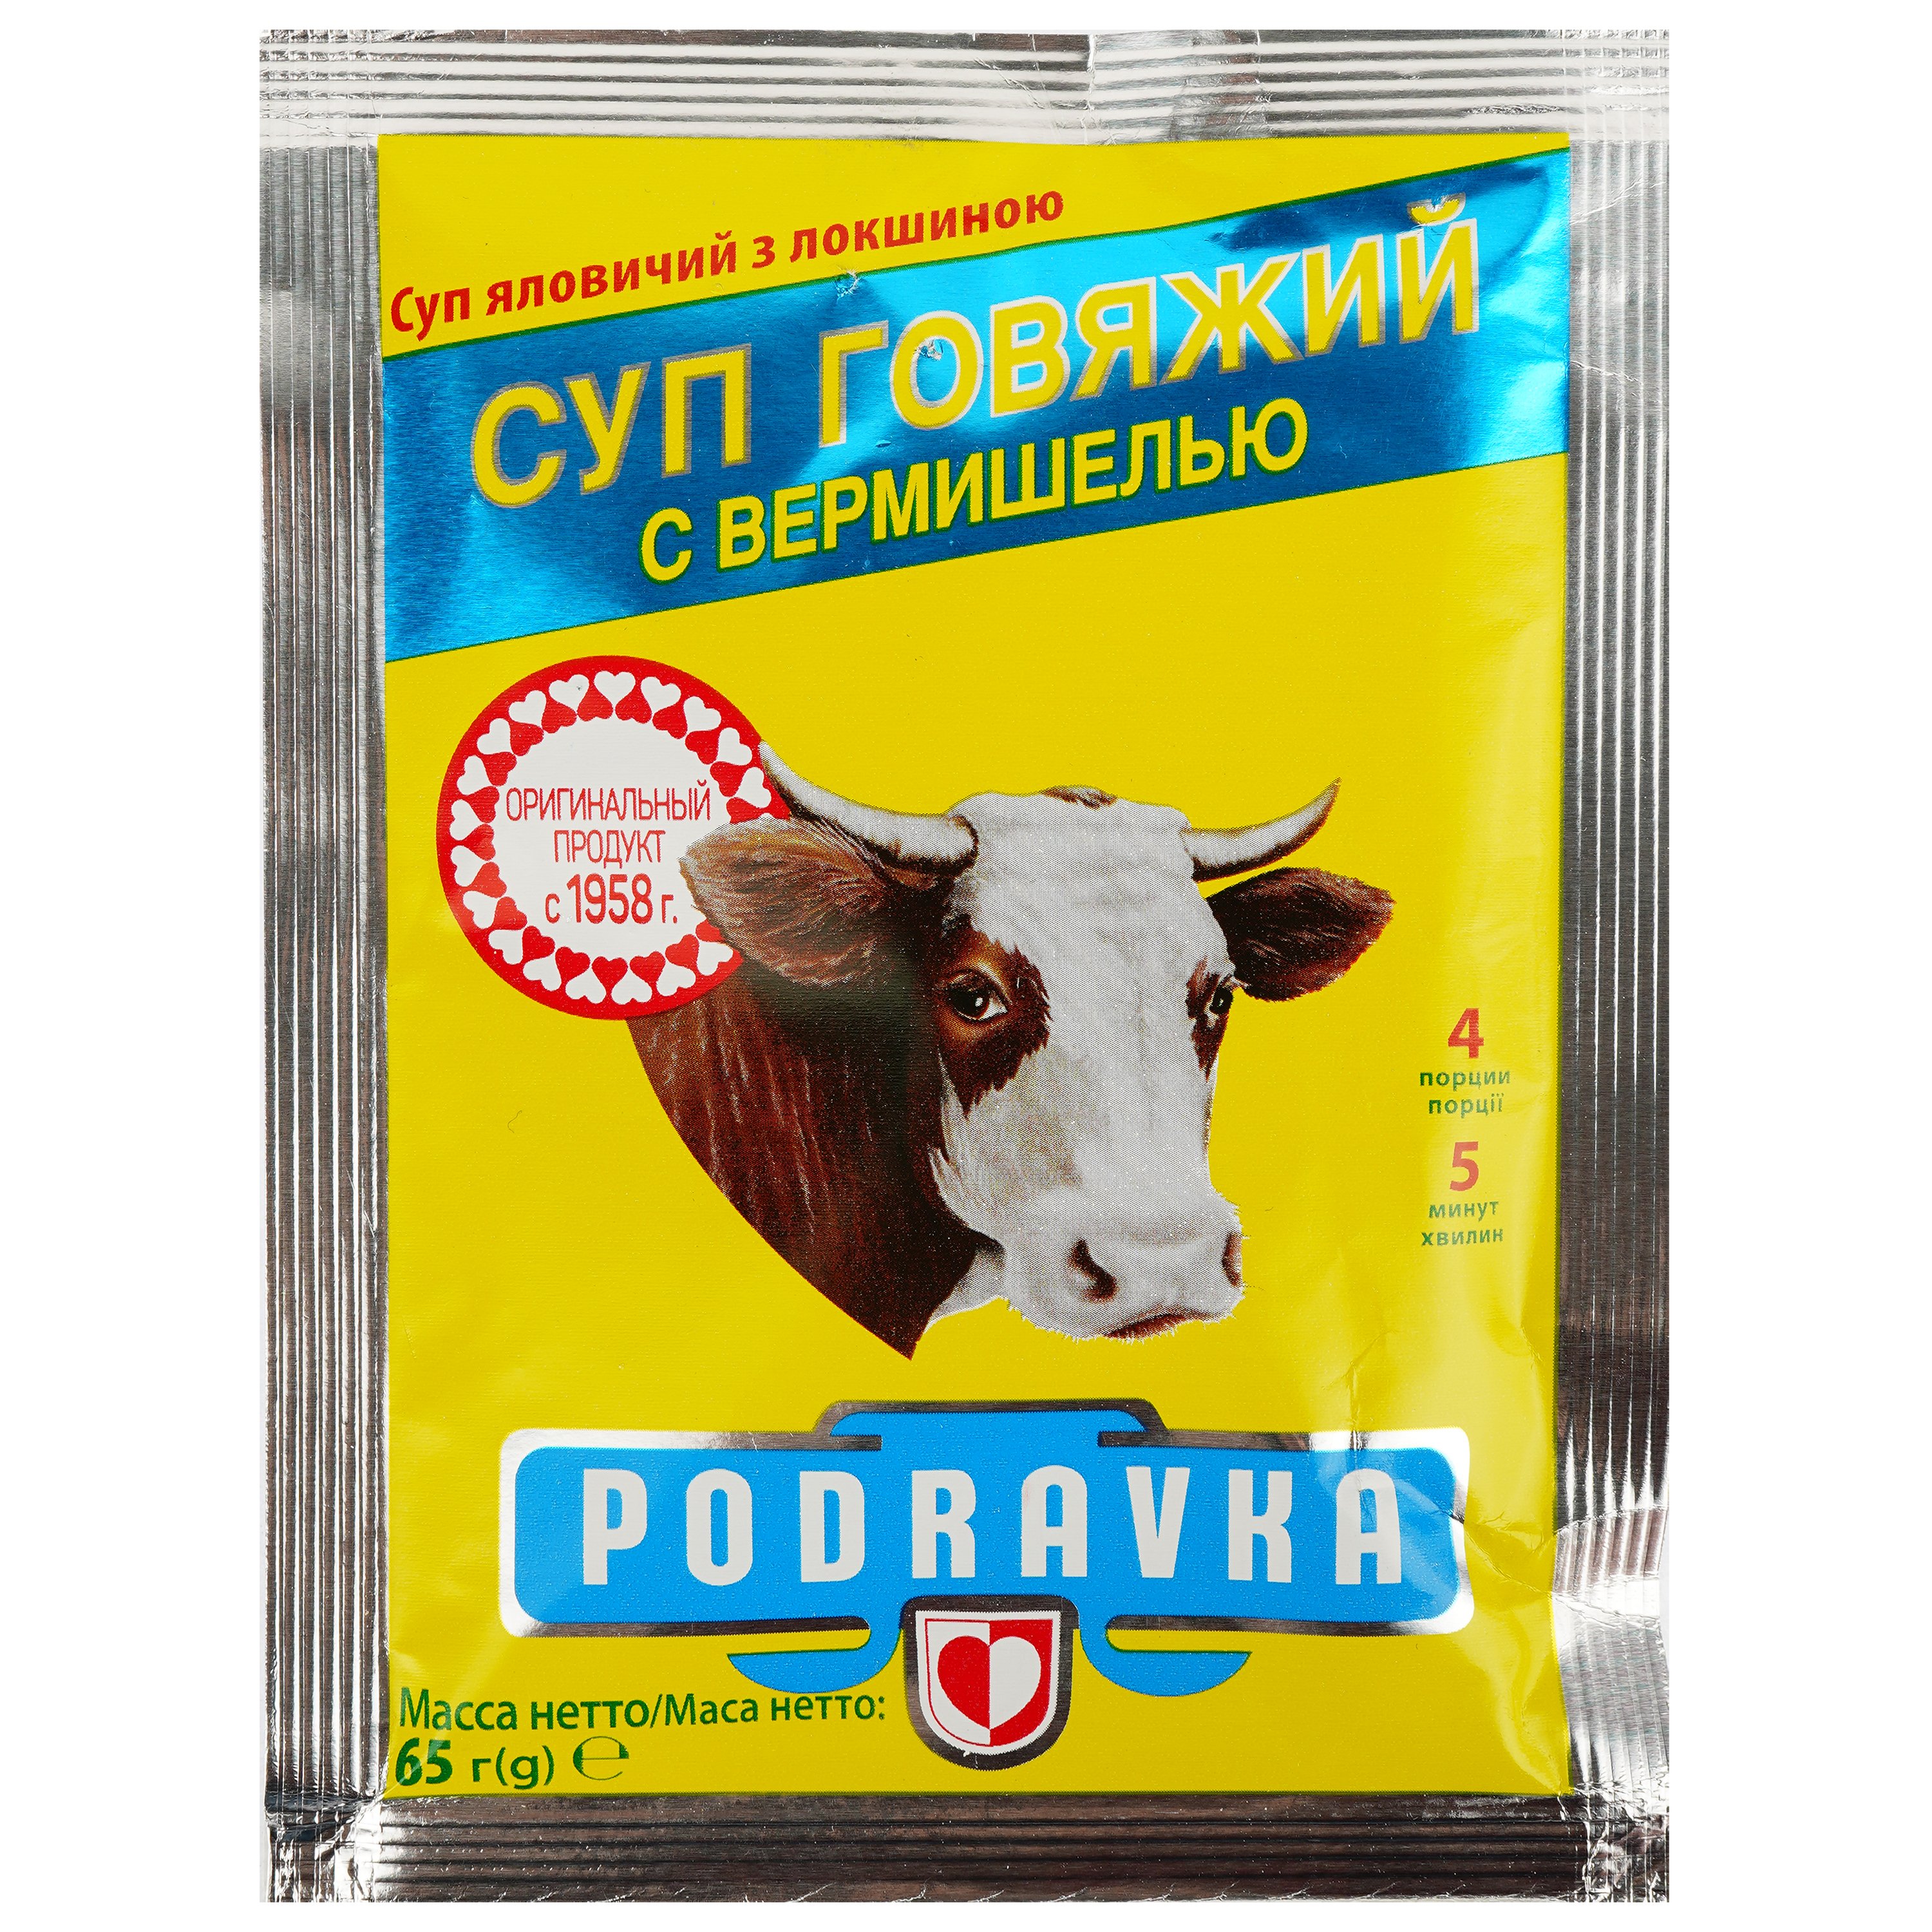 Суп Podravka из говядины с вермишелью 65 г (762464) - фото 1